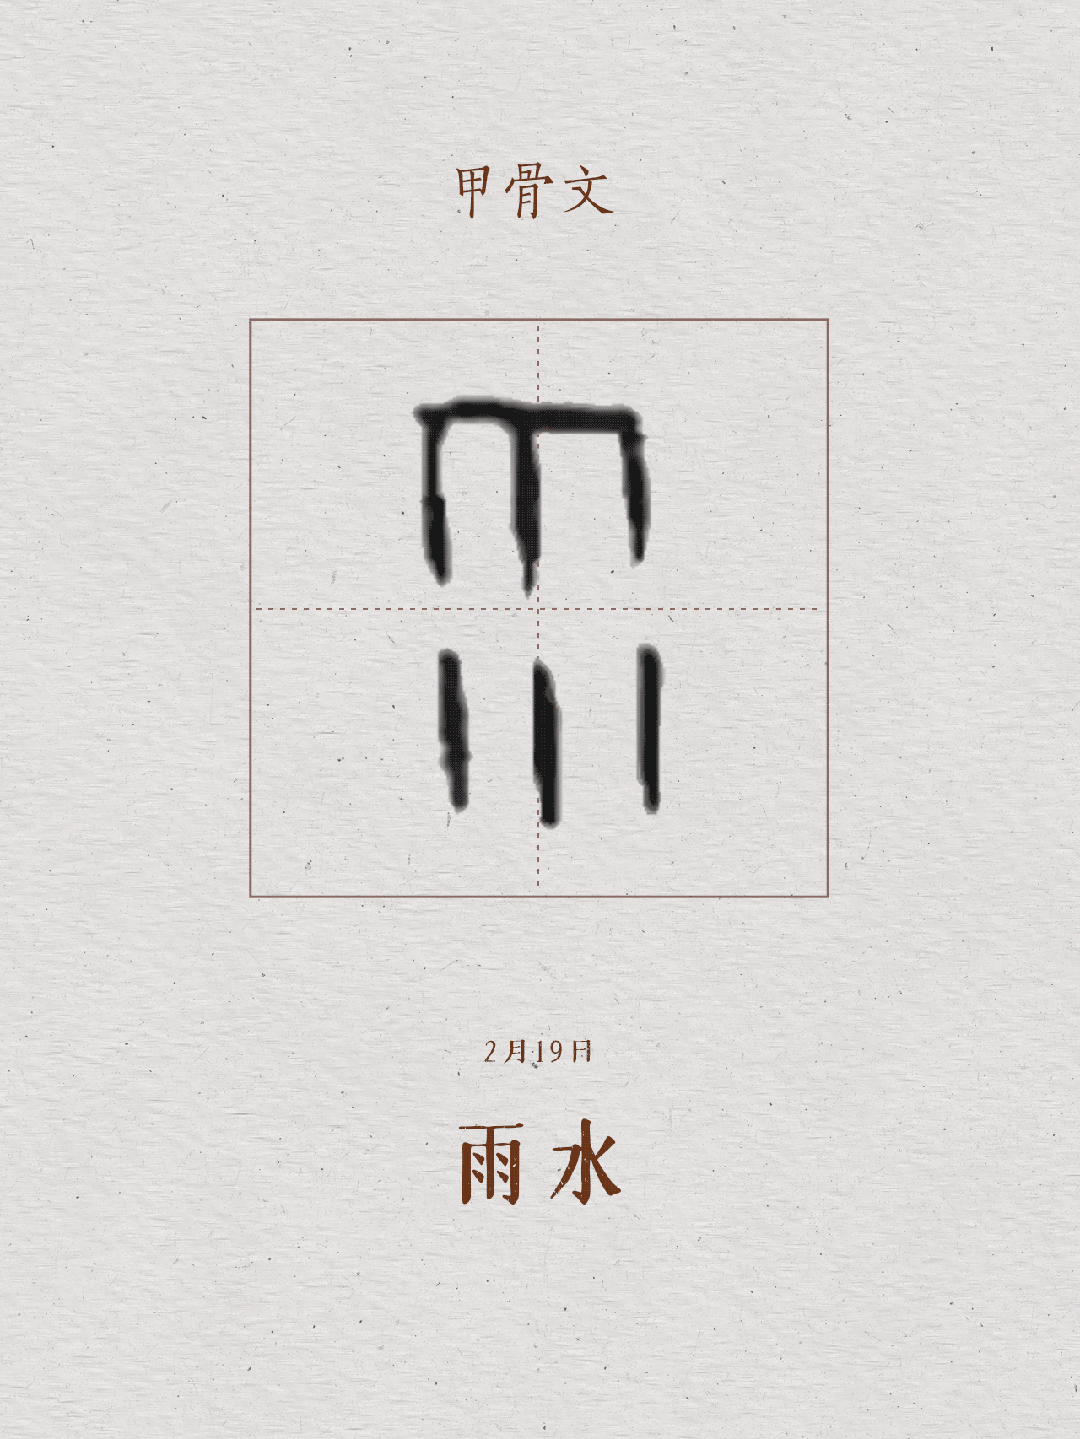 它是象形字甲骨文上面一横表示天,下垂的六条短线表示下落的雨滴